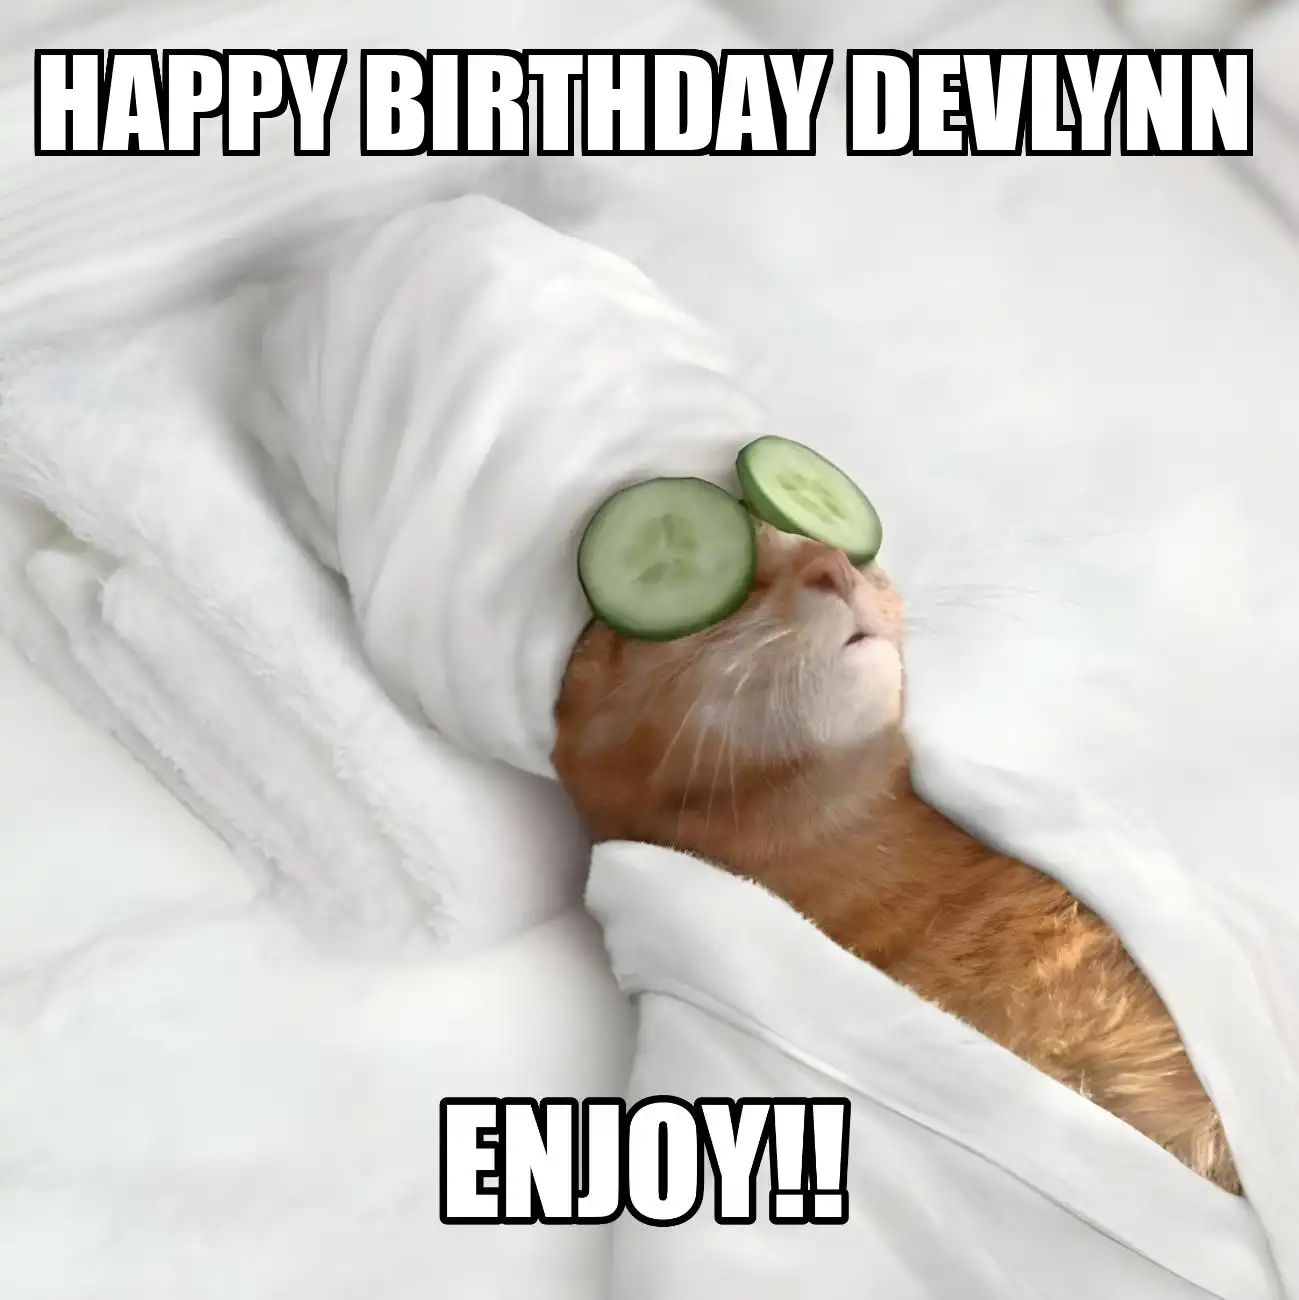 Happy Birthday Devlynn Enjoy Cat Meme